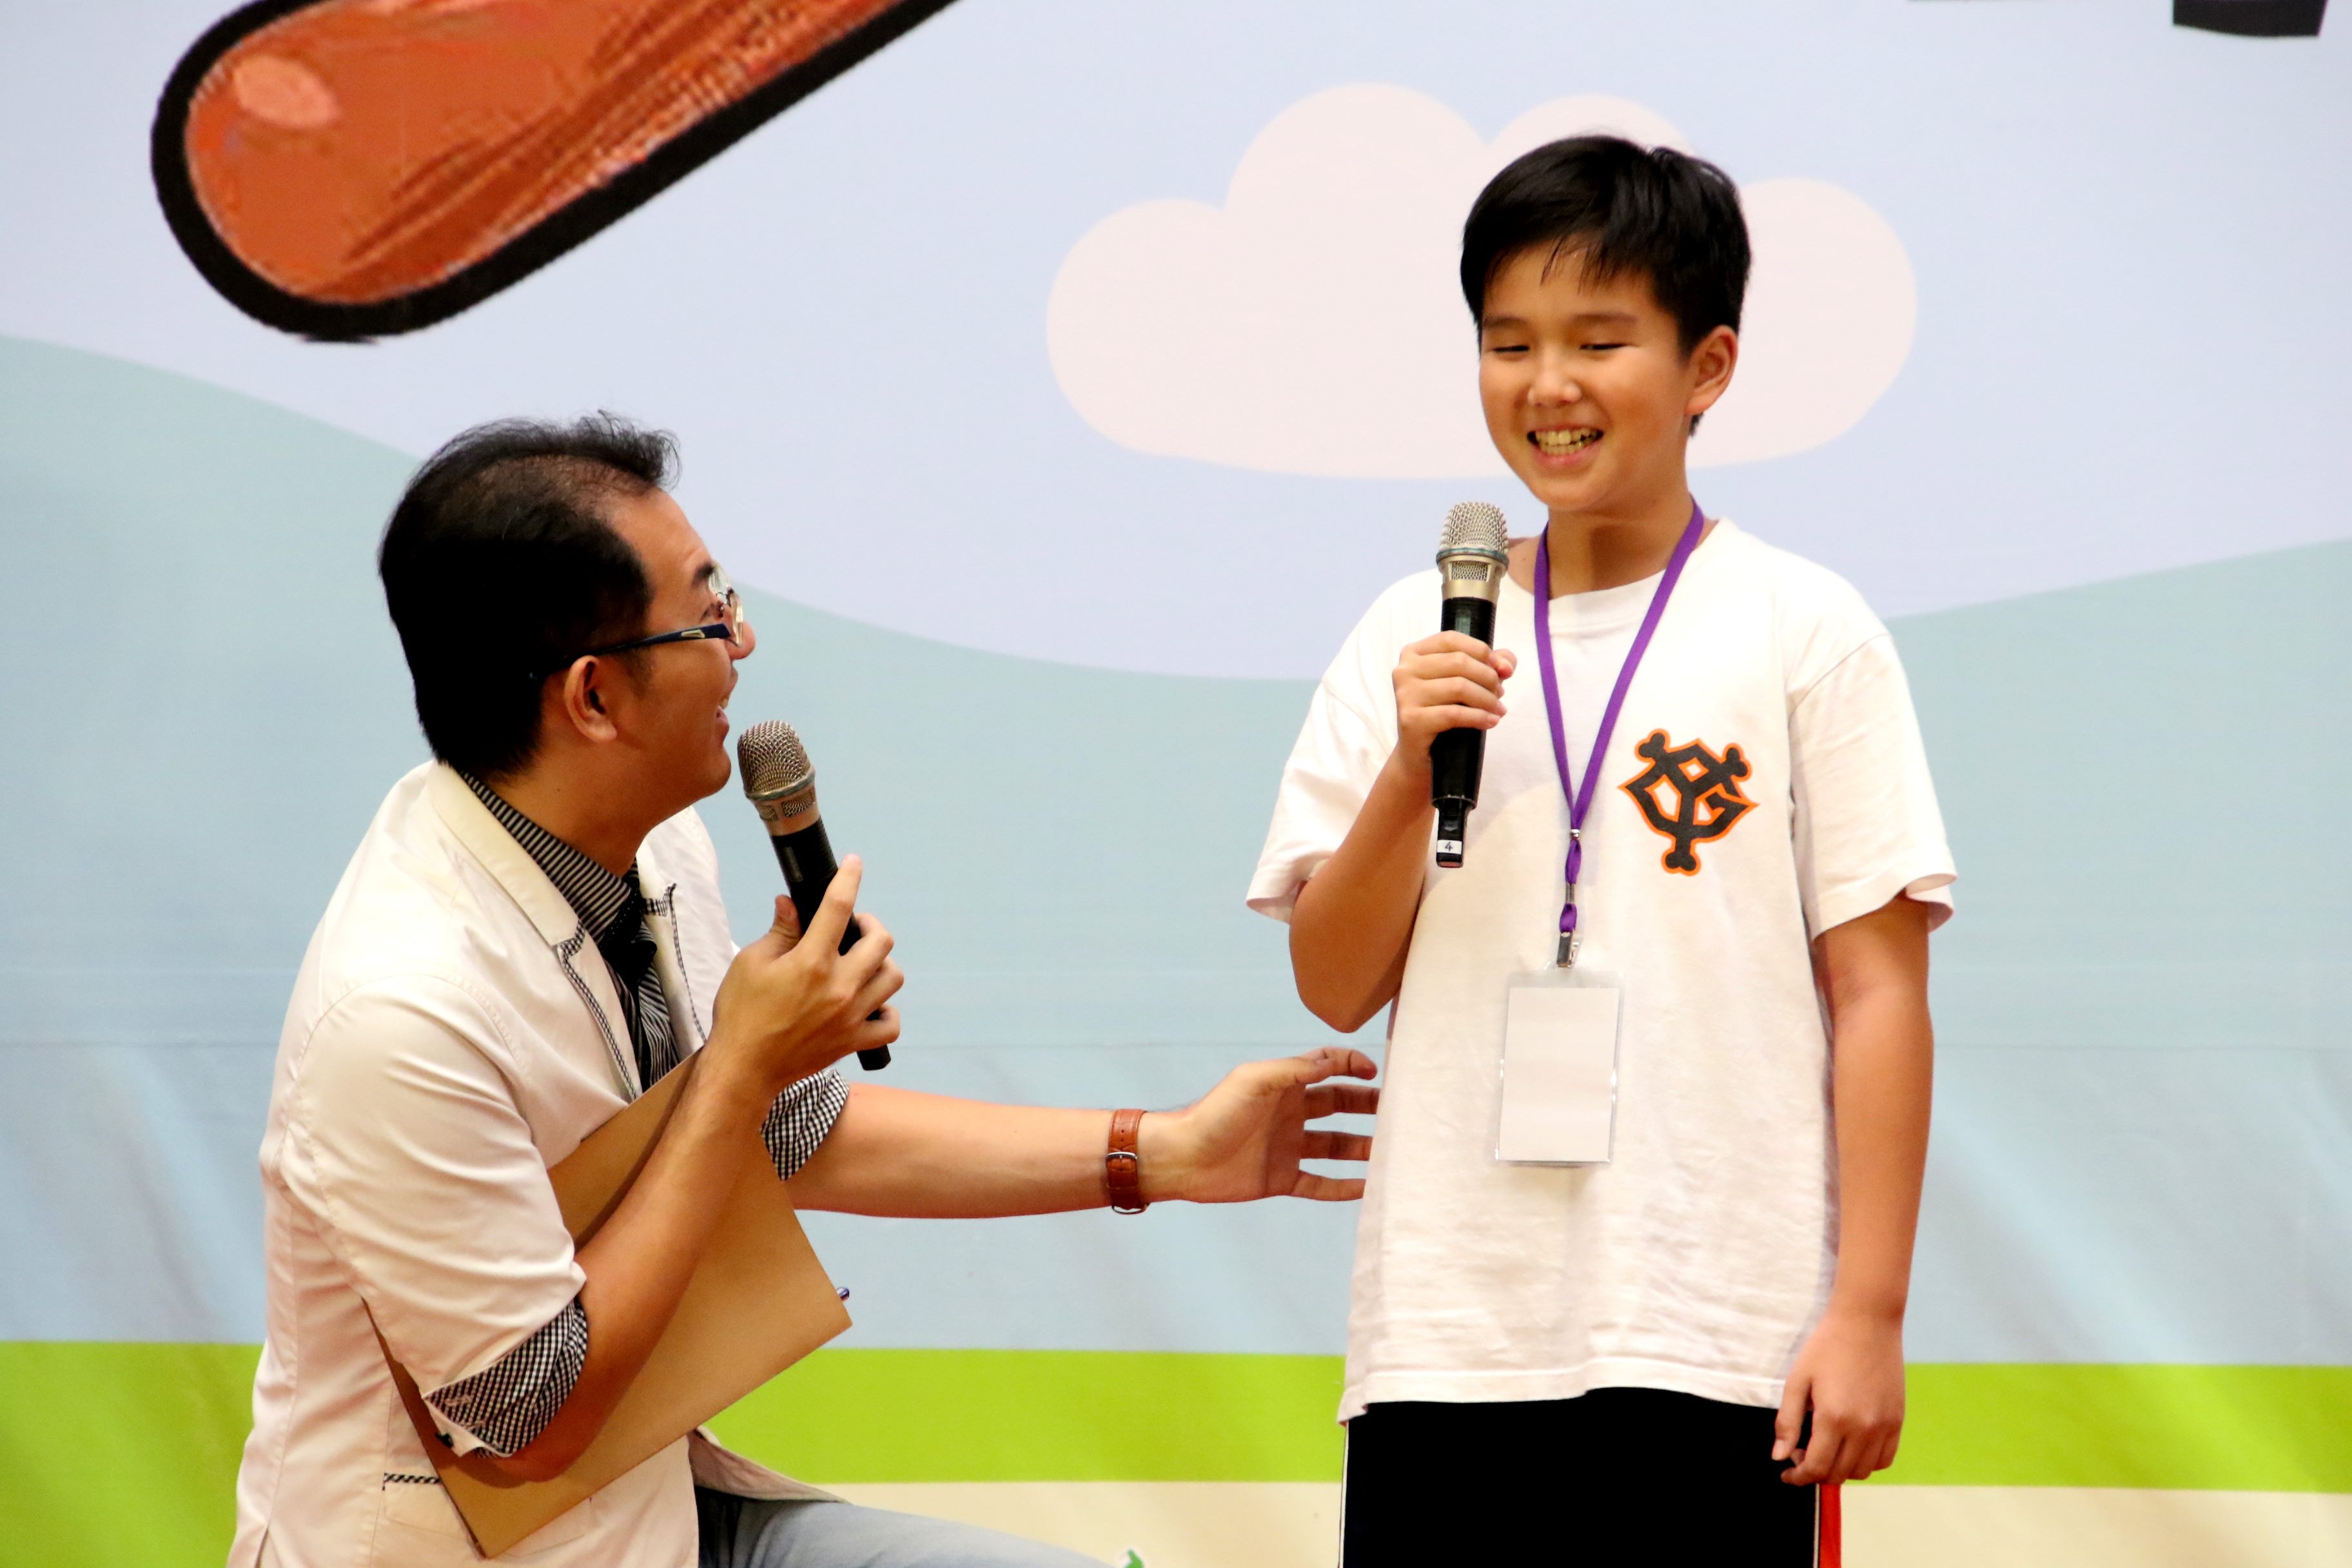 民生国小六年级张辰安小朋友希望能成为一个球评，分享每个球队的战术